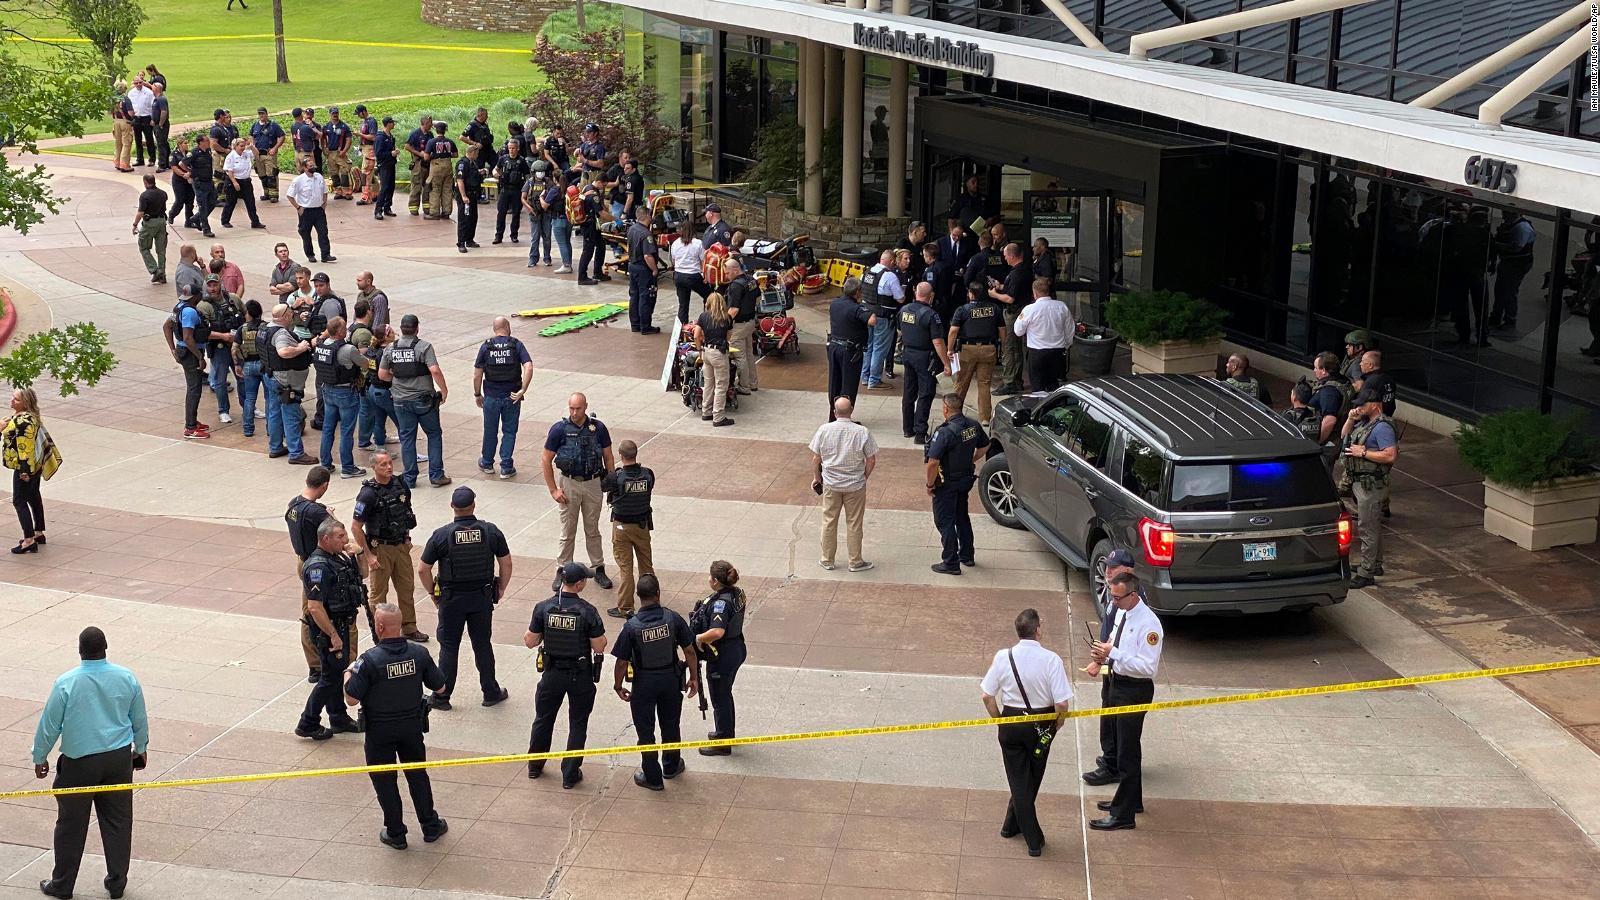 Al menos 4 personas murieron tras un tiroteo en un hospital de Tulsa, Oklahoma